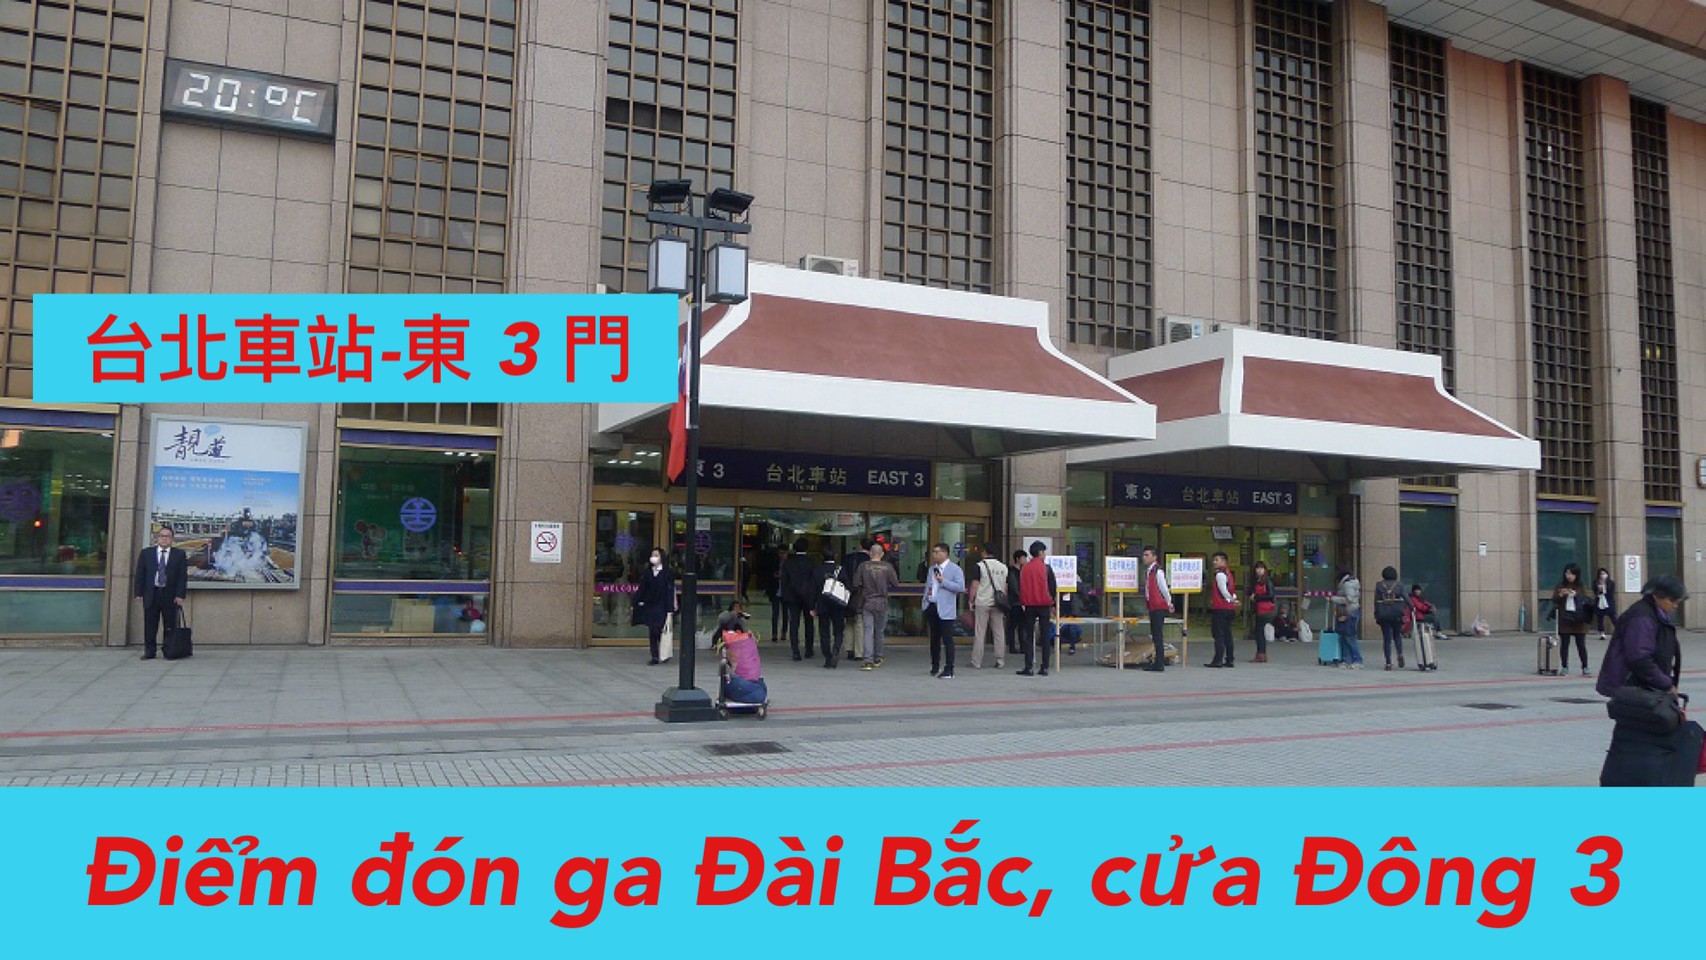 07:00 Đón ga Đài Bắc East 3 (台北火車站 )